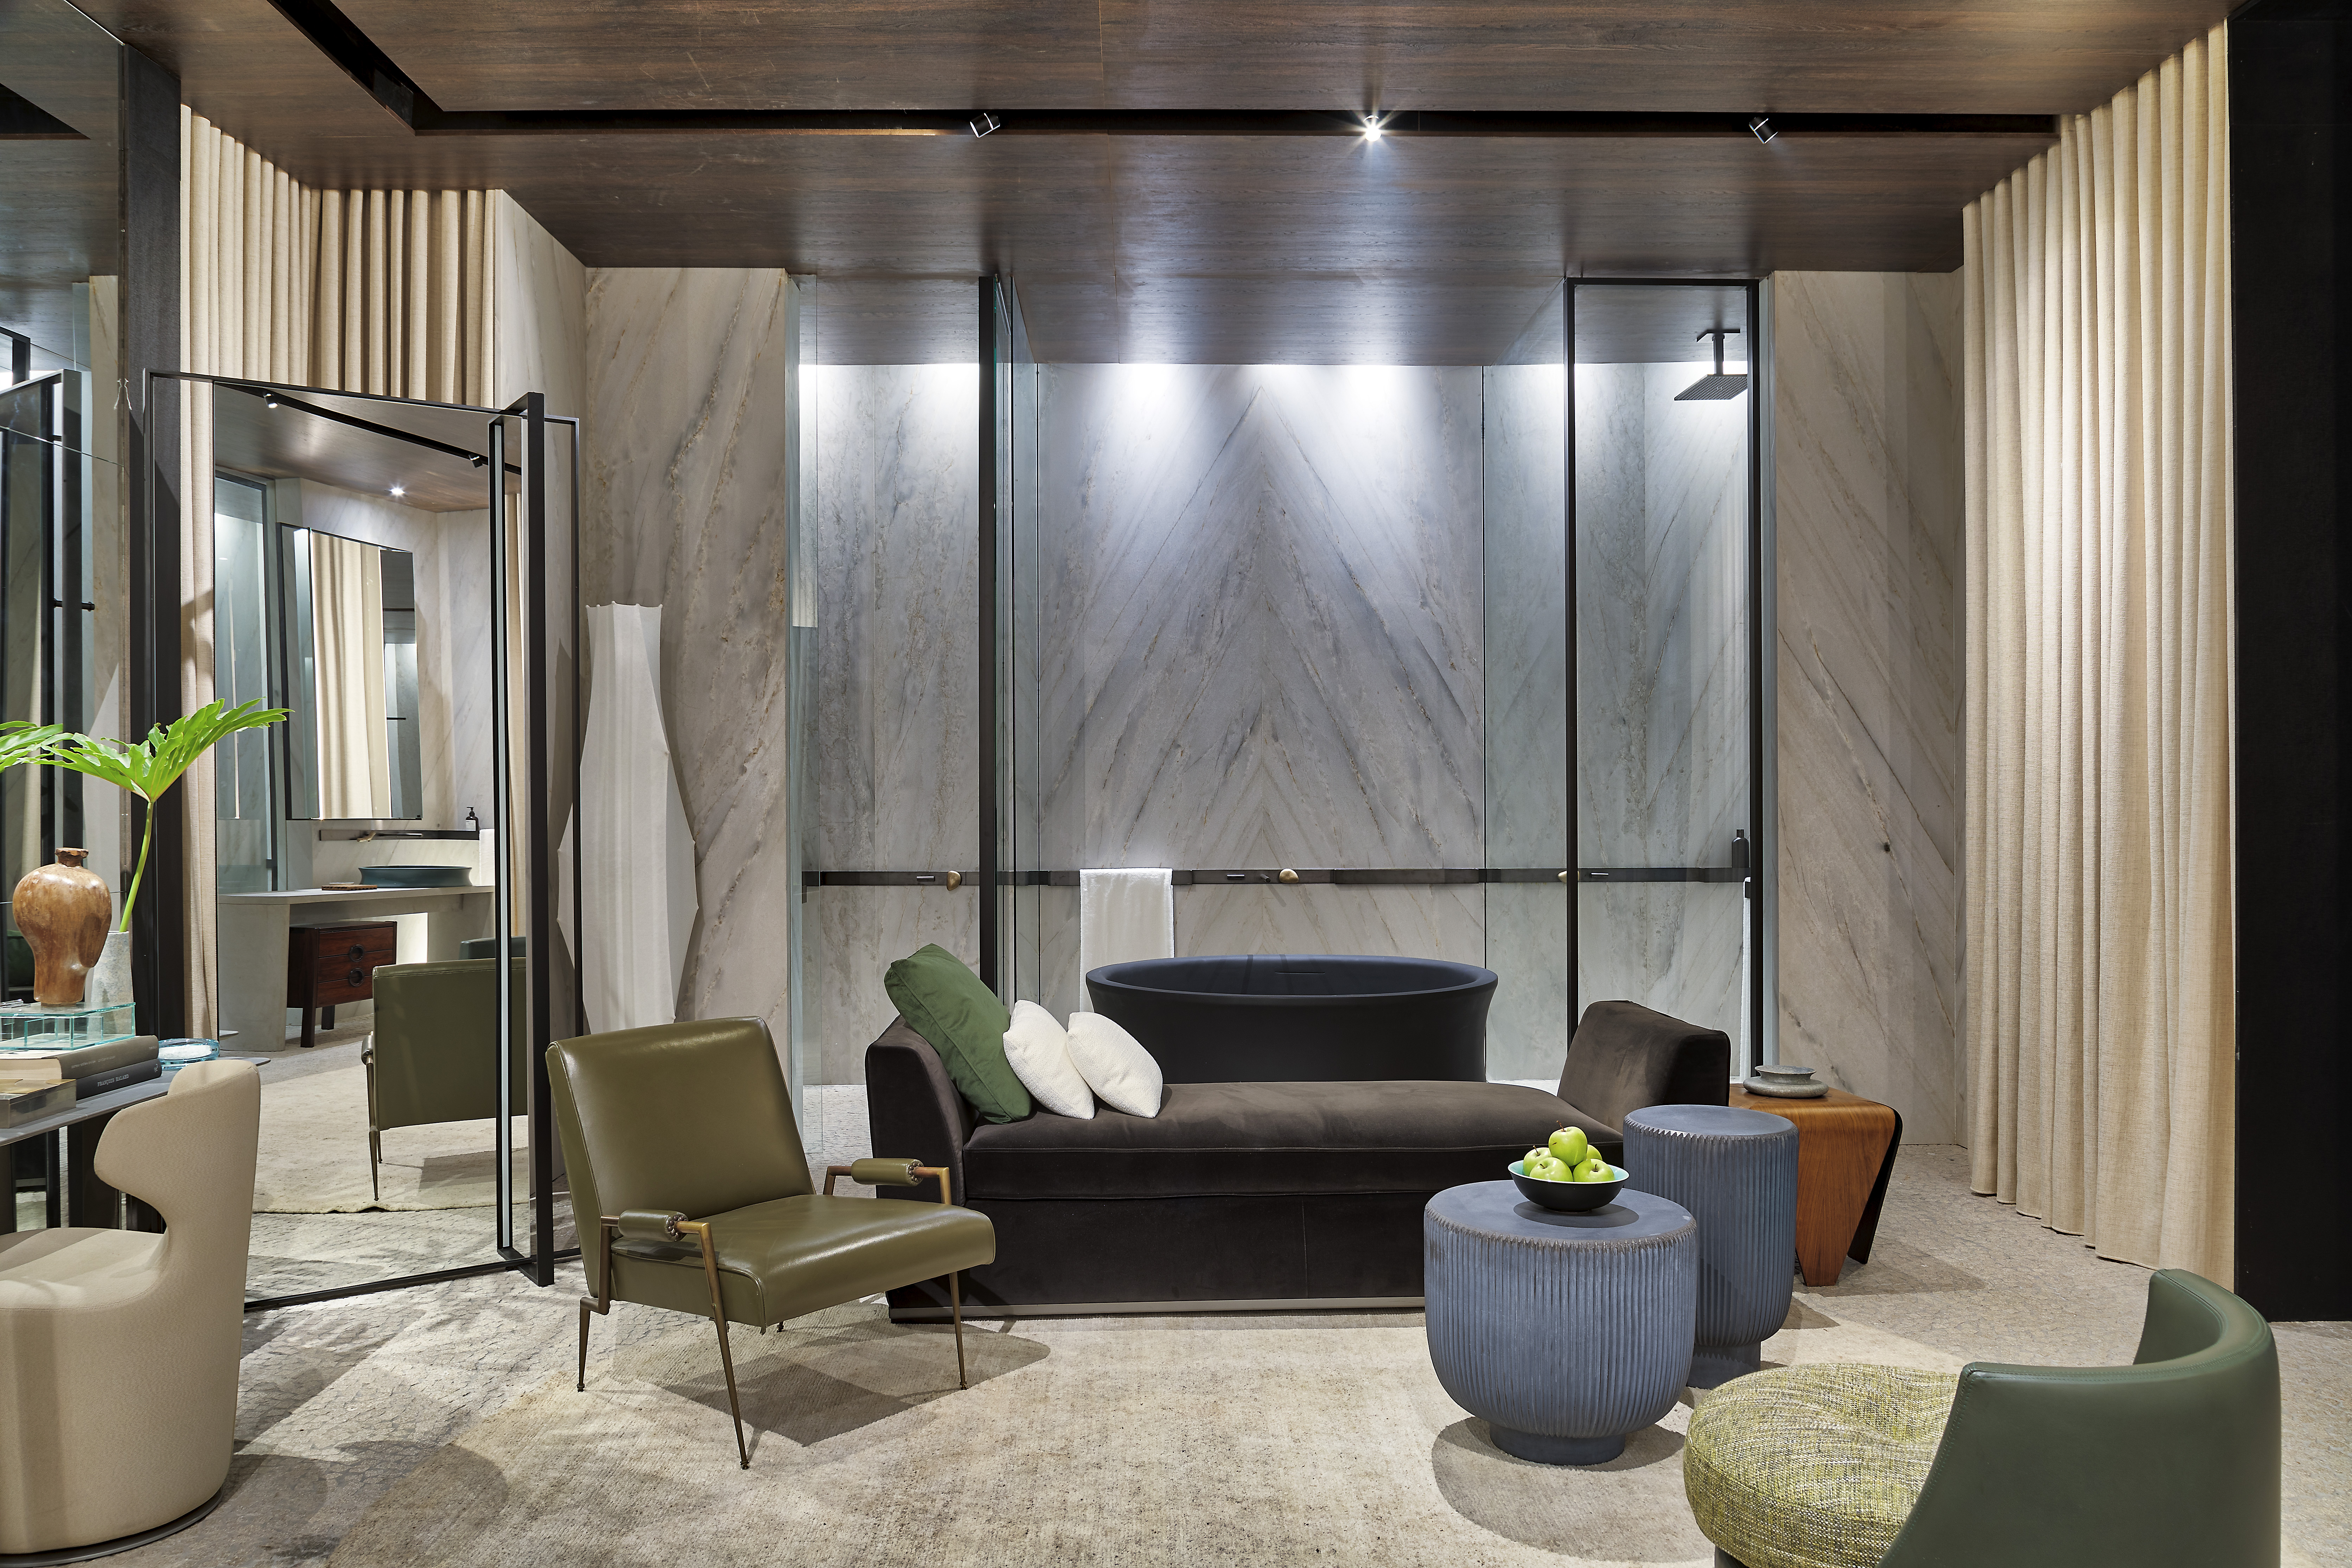 CASACOR São Paulo 2018 - Tenório. Neste ano, o arquiteto surpreende com A Cisterna de Deca, que inclui sala de banho, Hall da Cascata, para apresentar uma nova experiência com os produtos da marca.